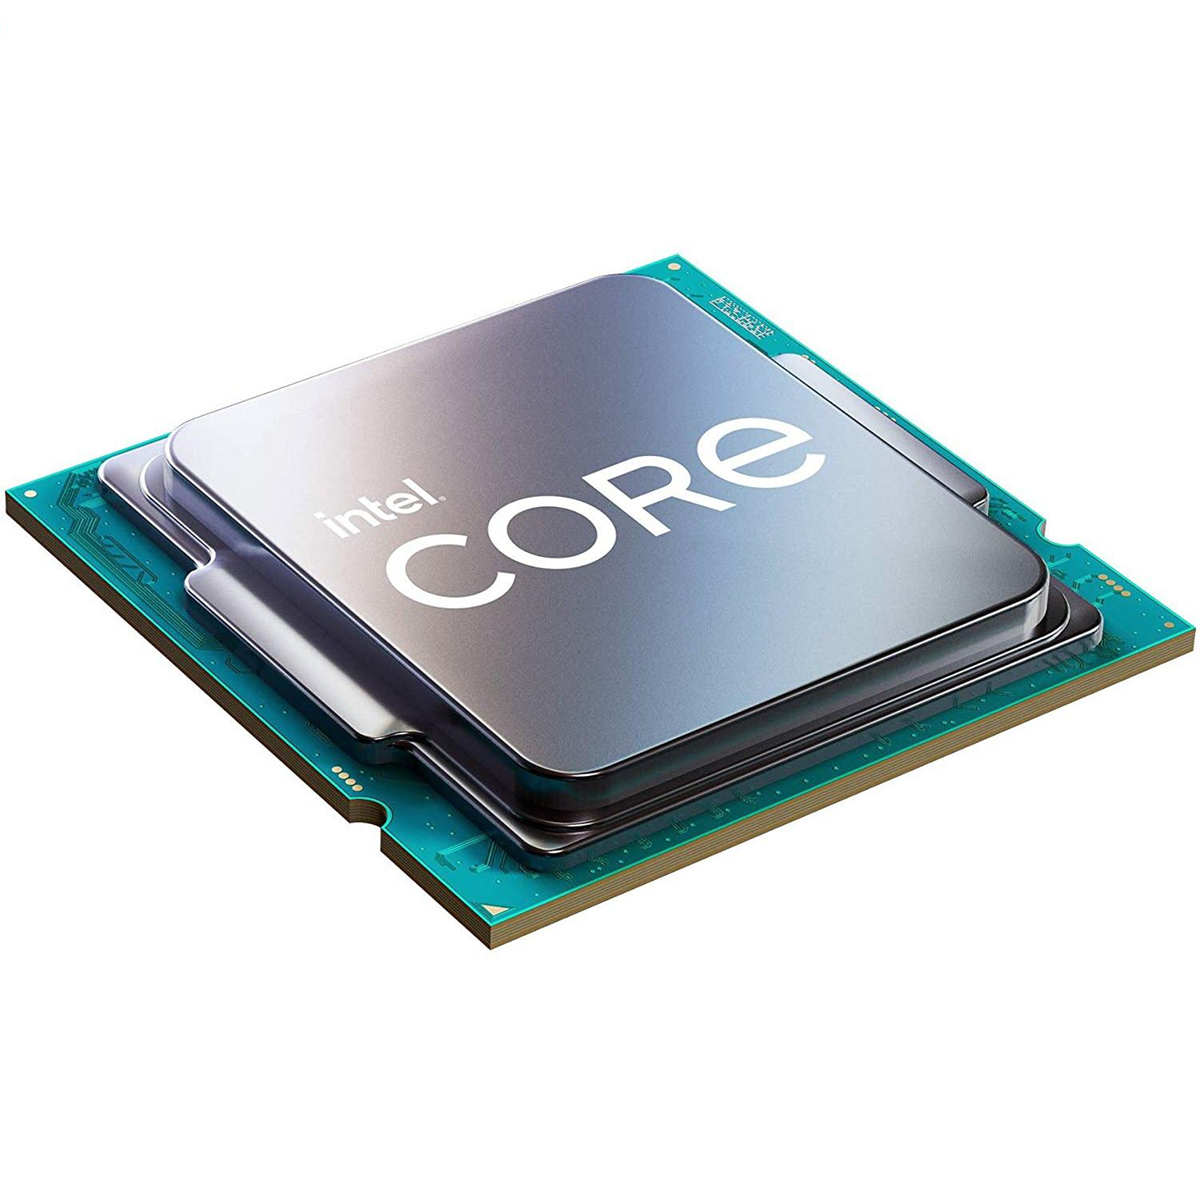 پردازنده مرکزی اینتل سری Skylake مدل Core i5-6400 Tray